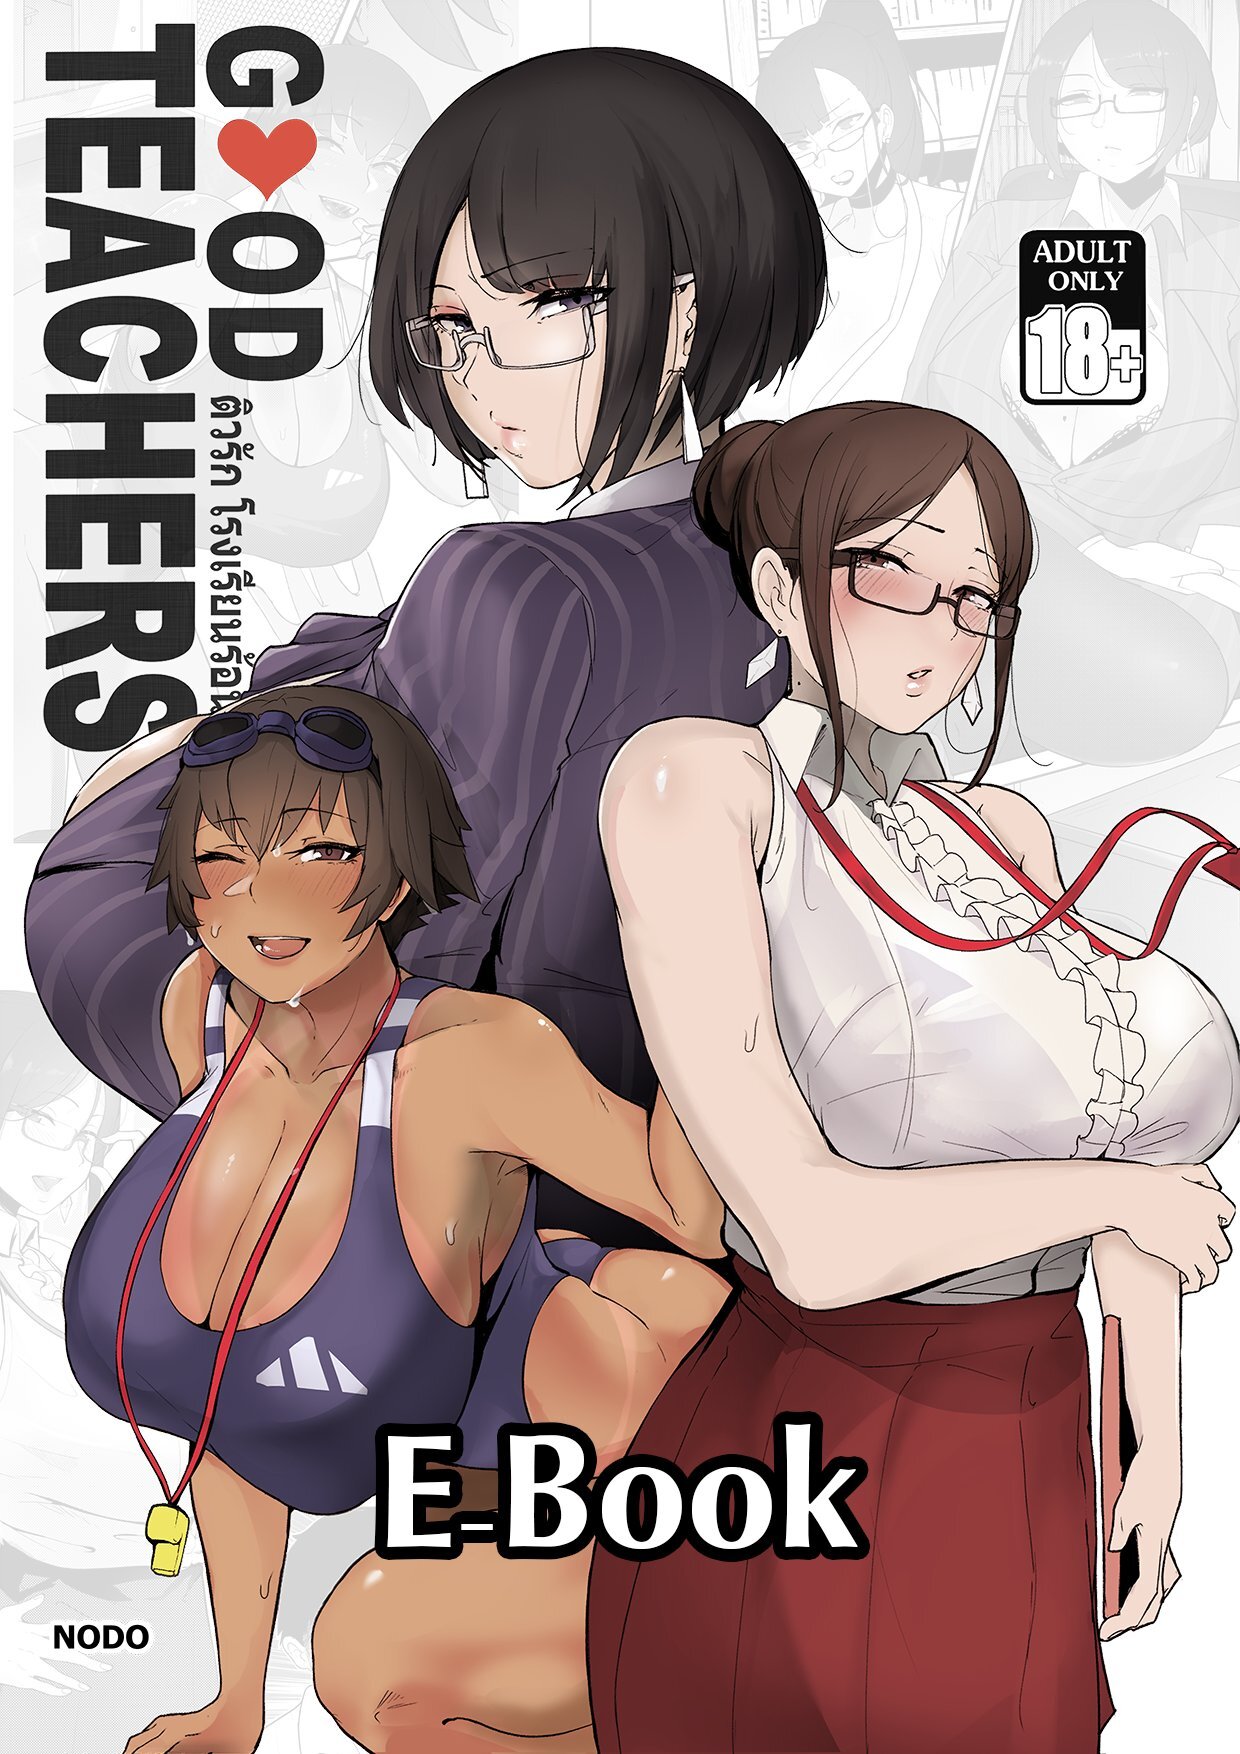 Manga porn teacher